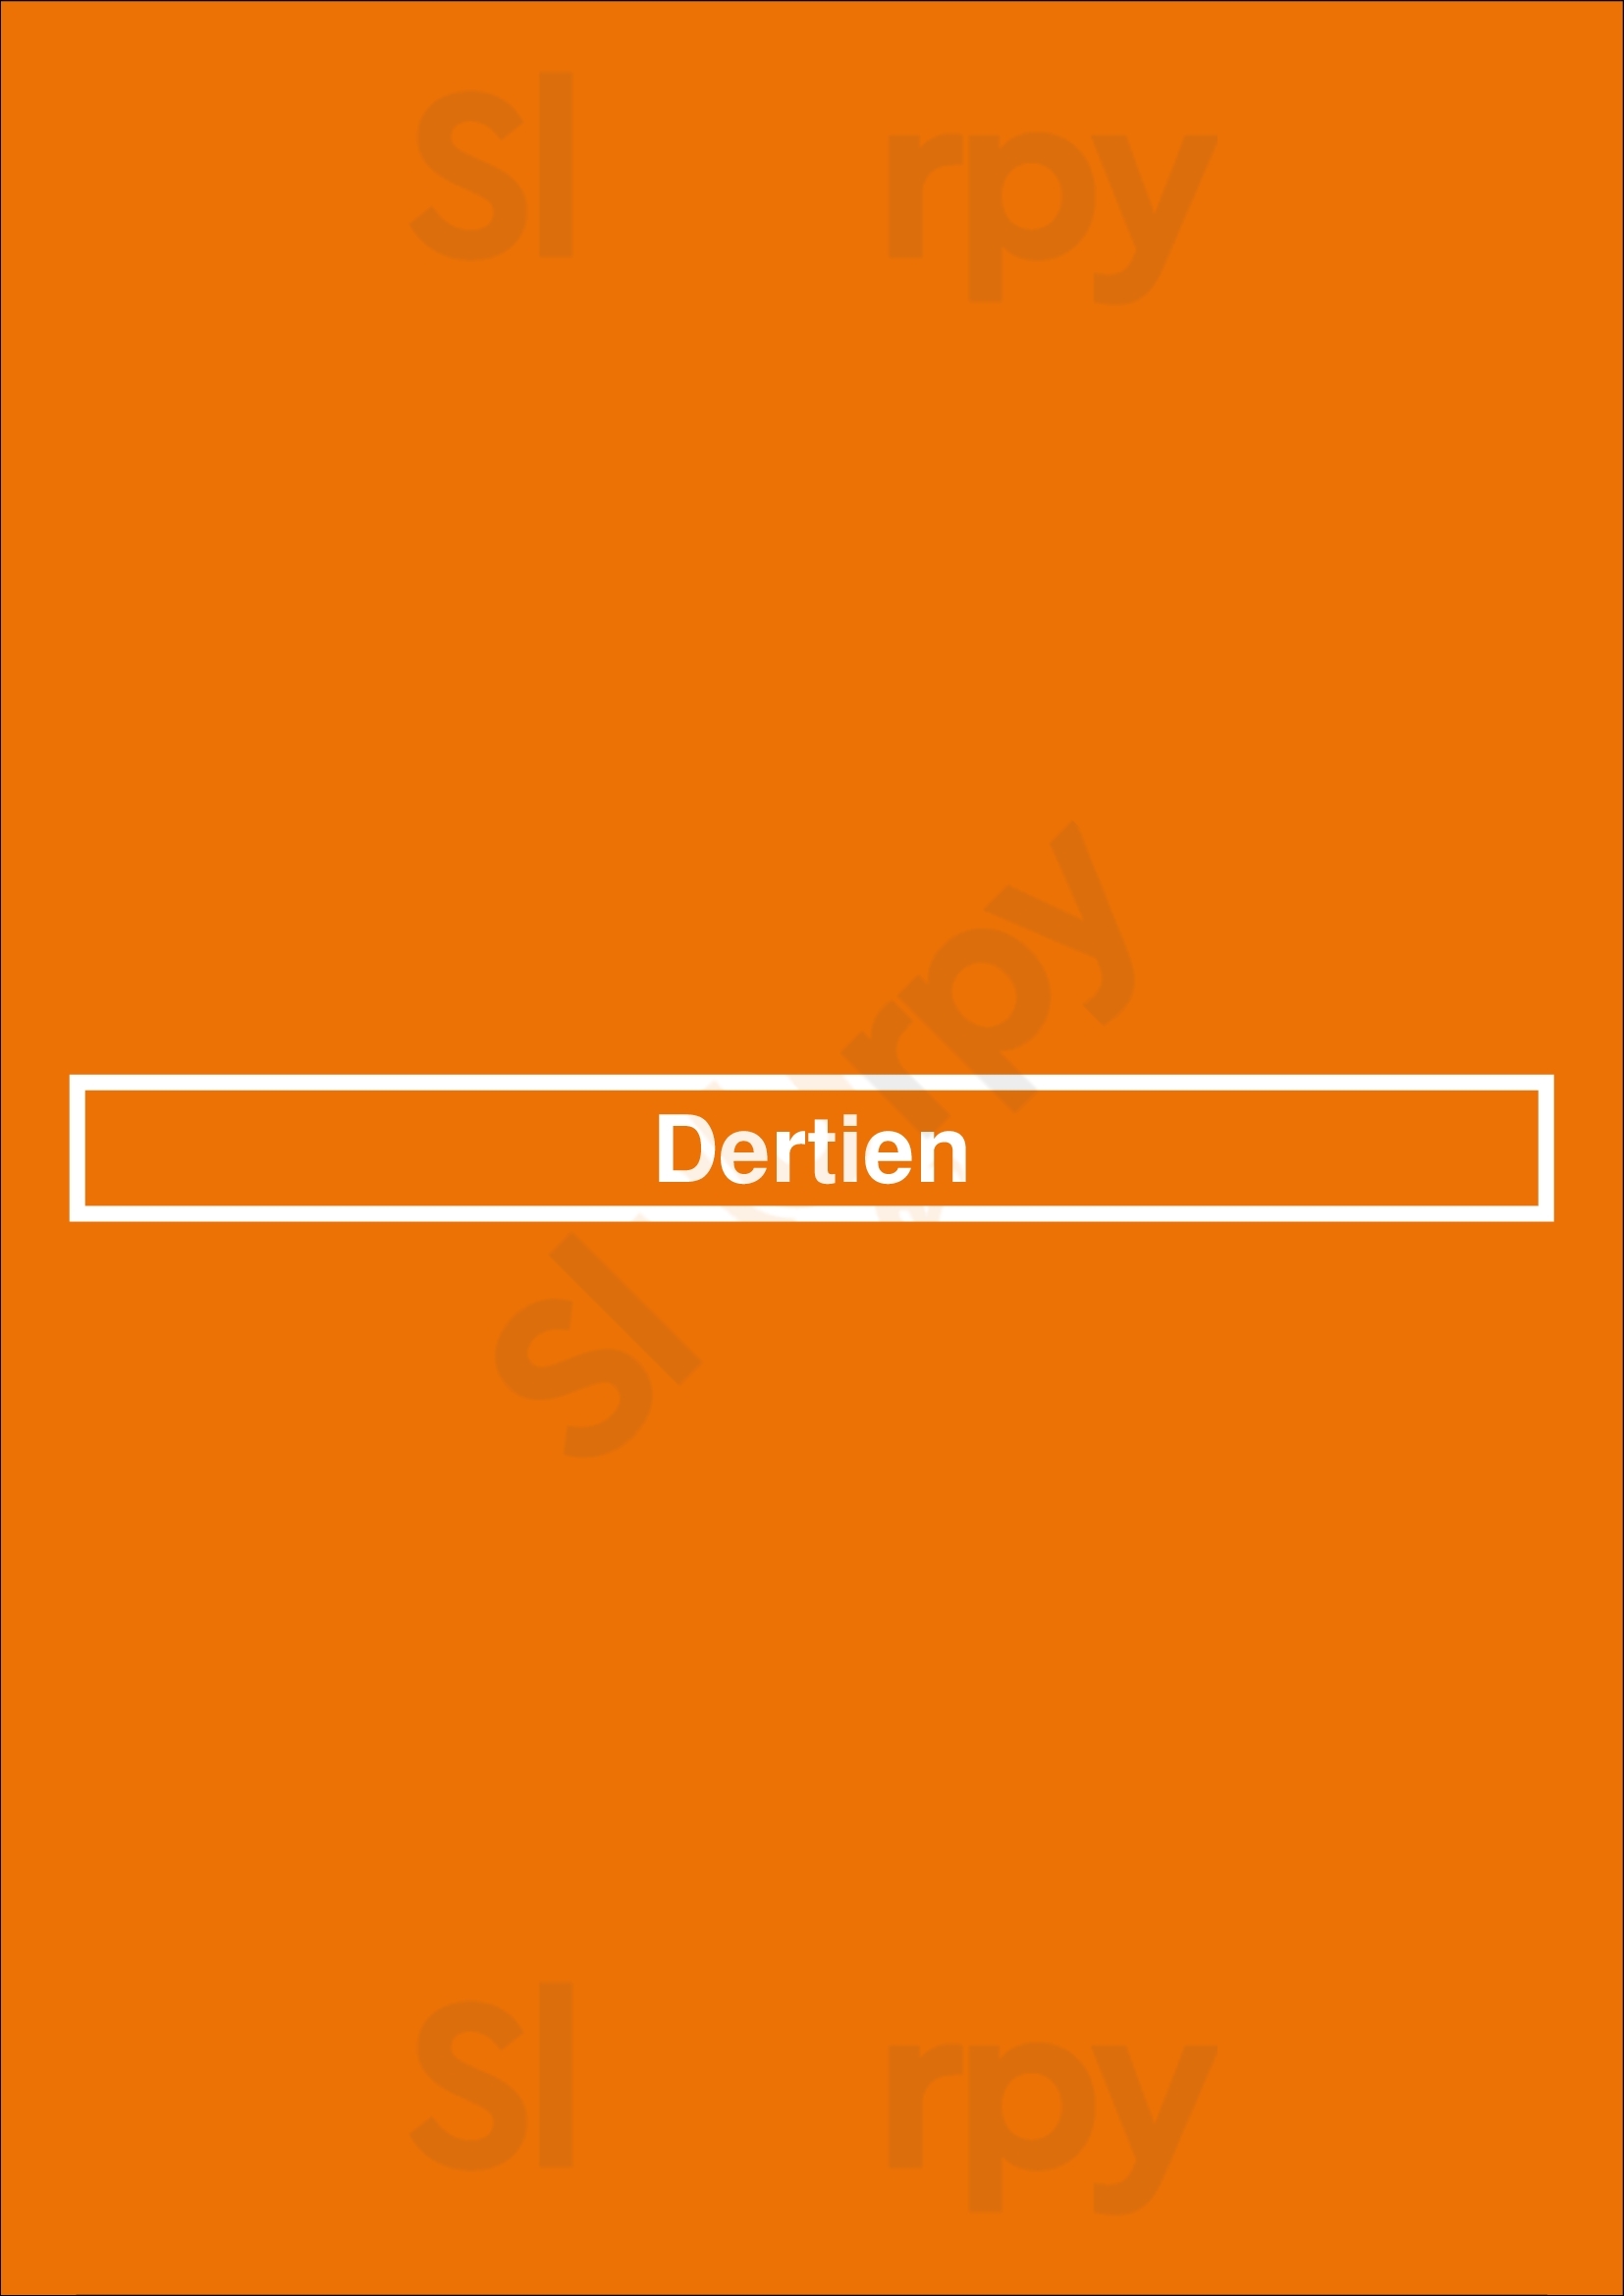 Dertien Rotterdam Menu - 1